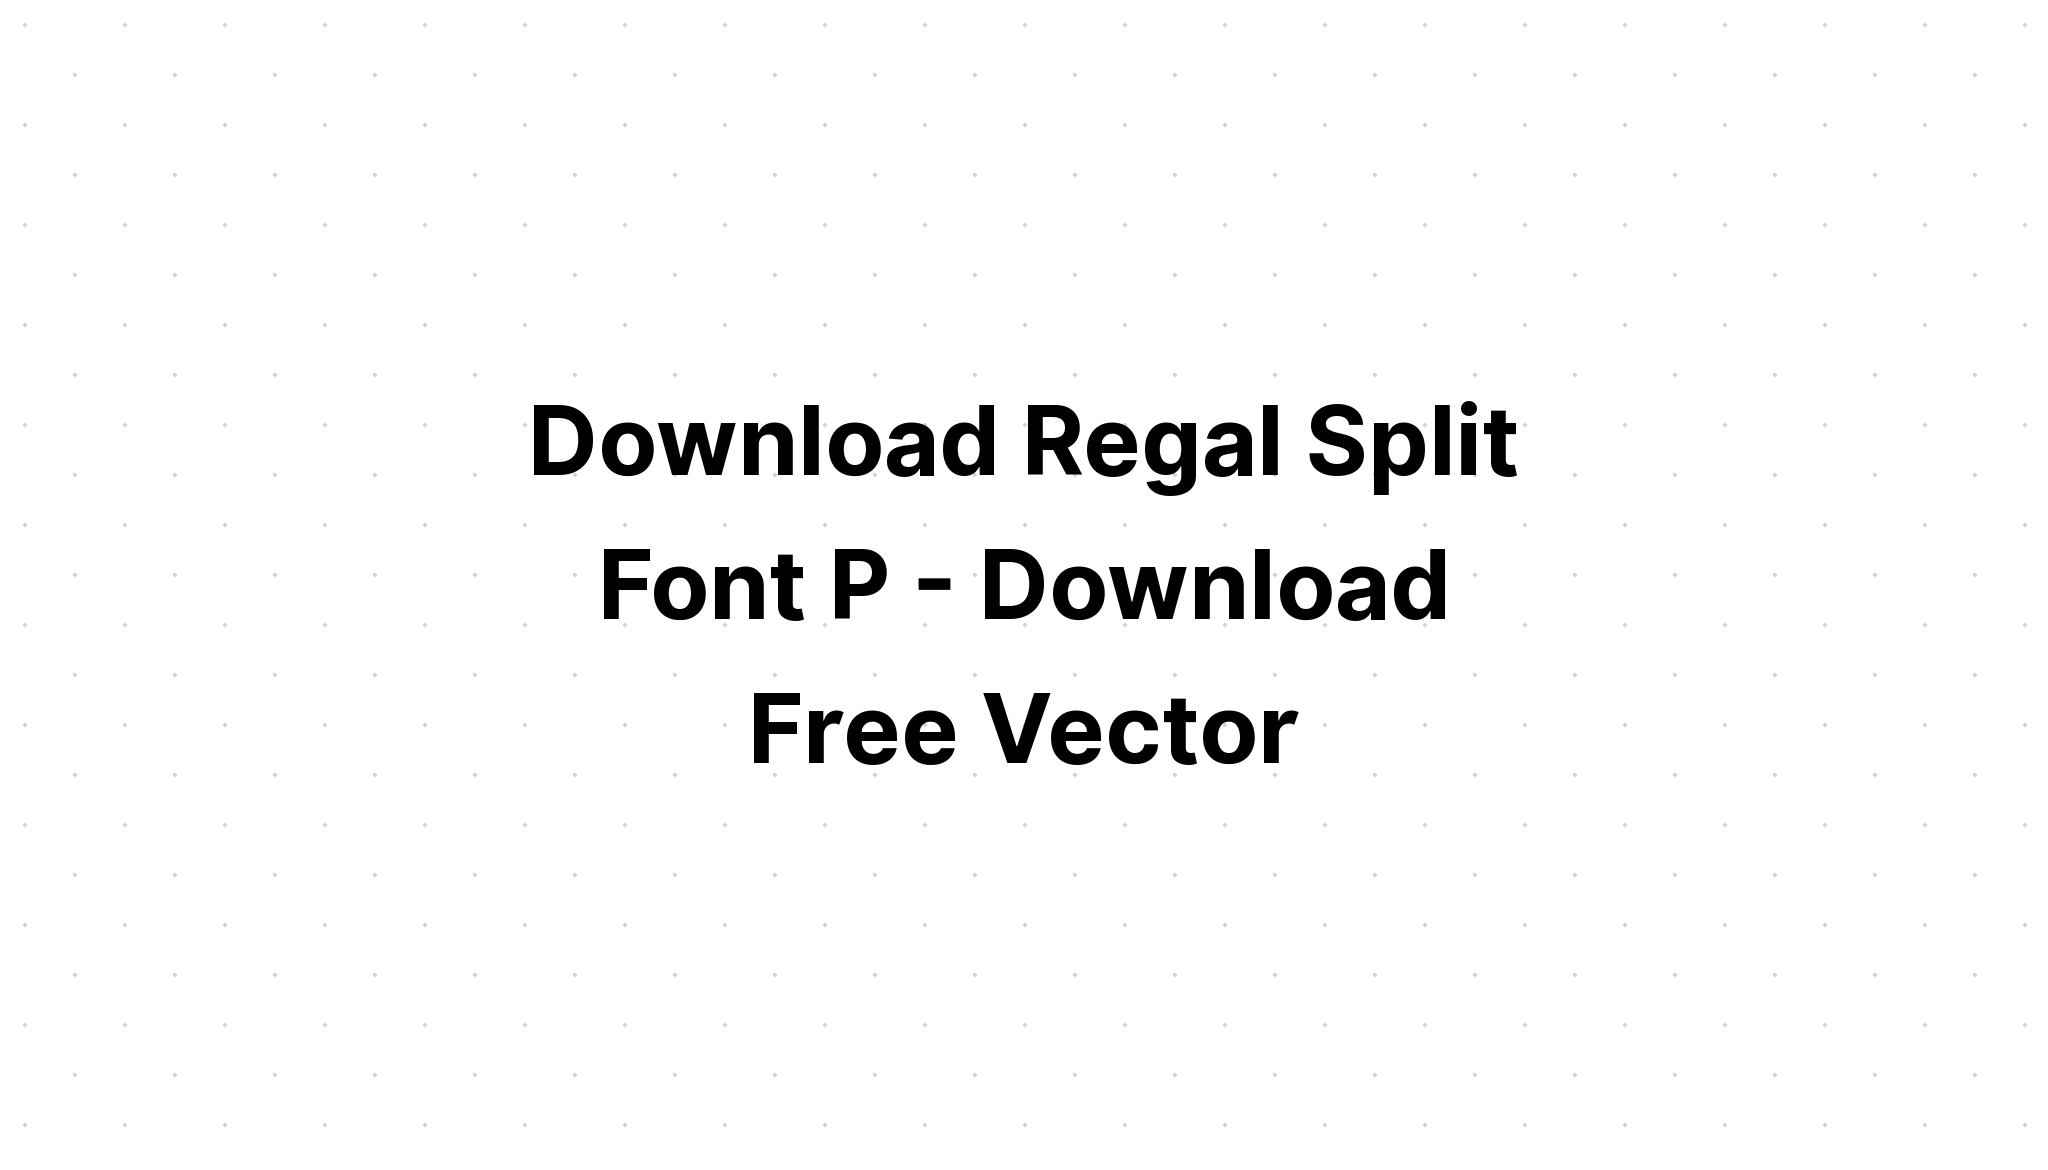 Download Split Letter Svg Letter P Alphabet Svg SVG File